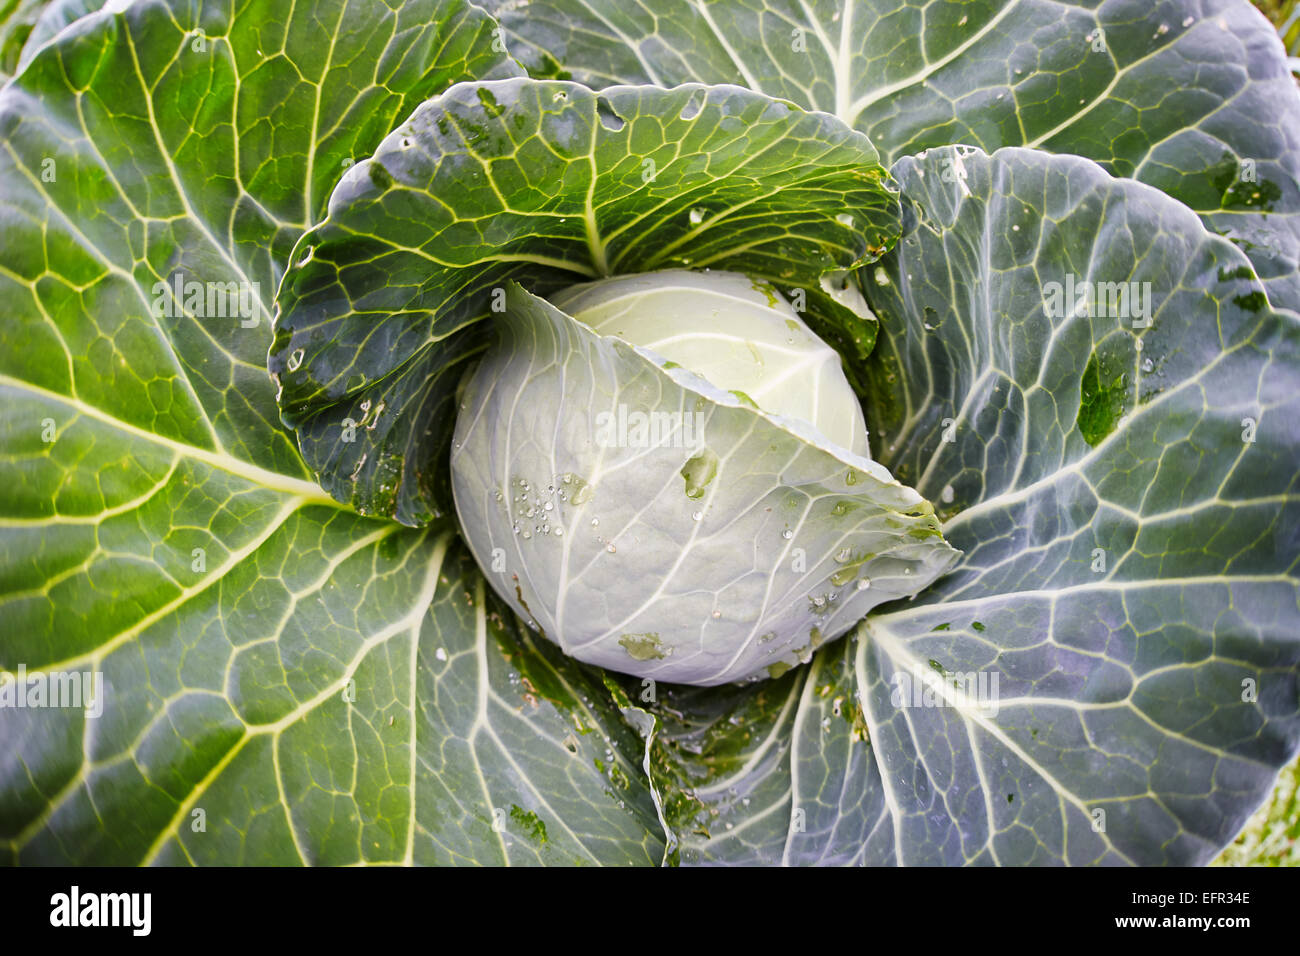 Nahaufnahme von organisch gewachsenen Kohl. Wissenschaftlicher Name: Brassica oleracea. Stockfoto